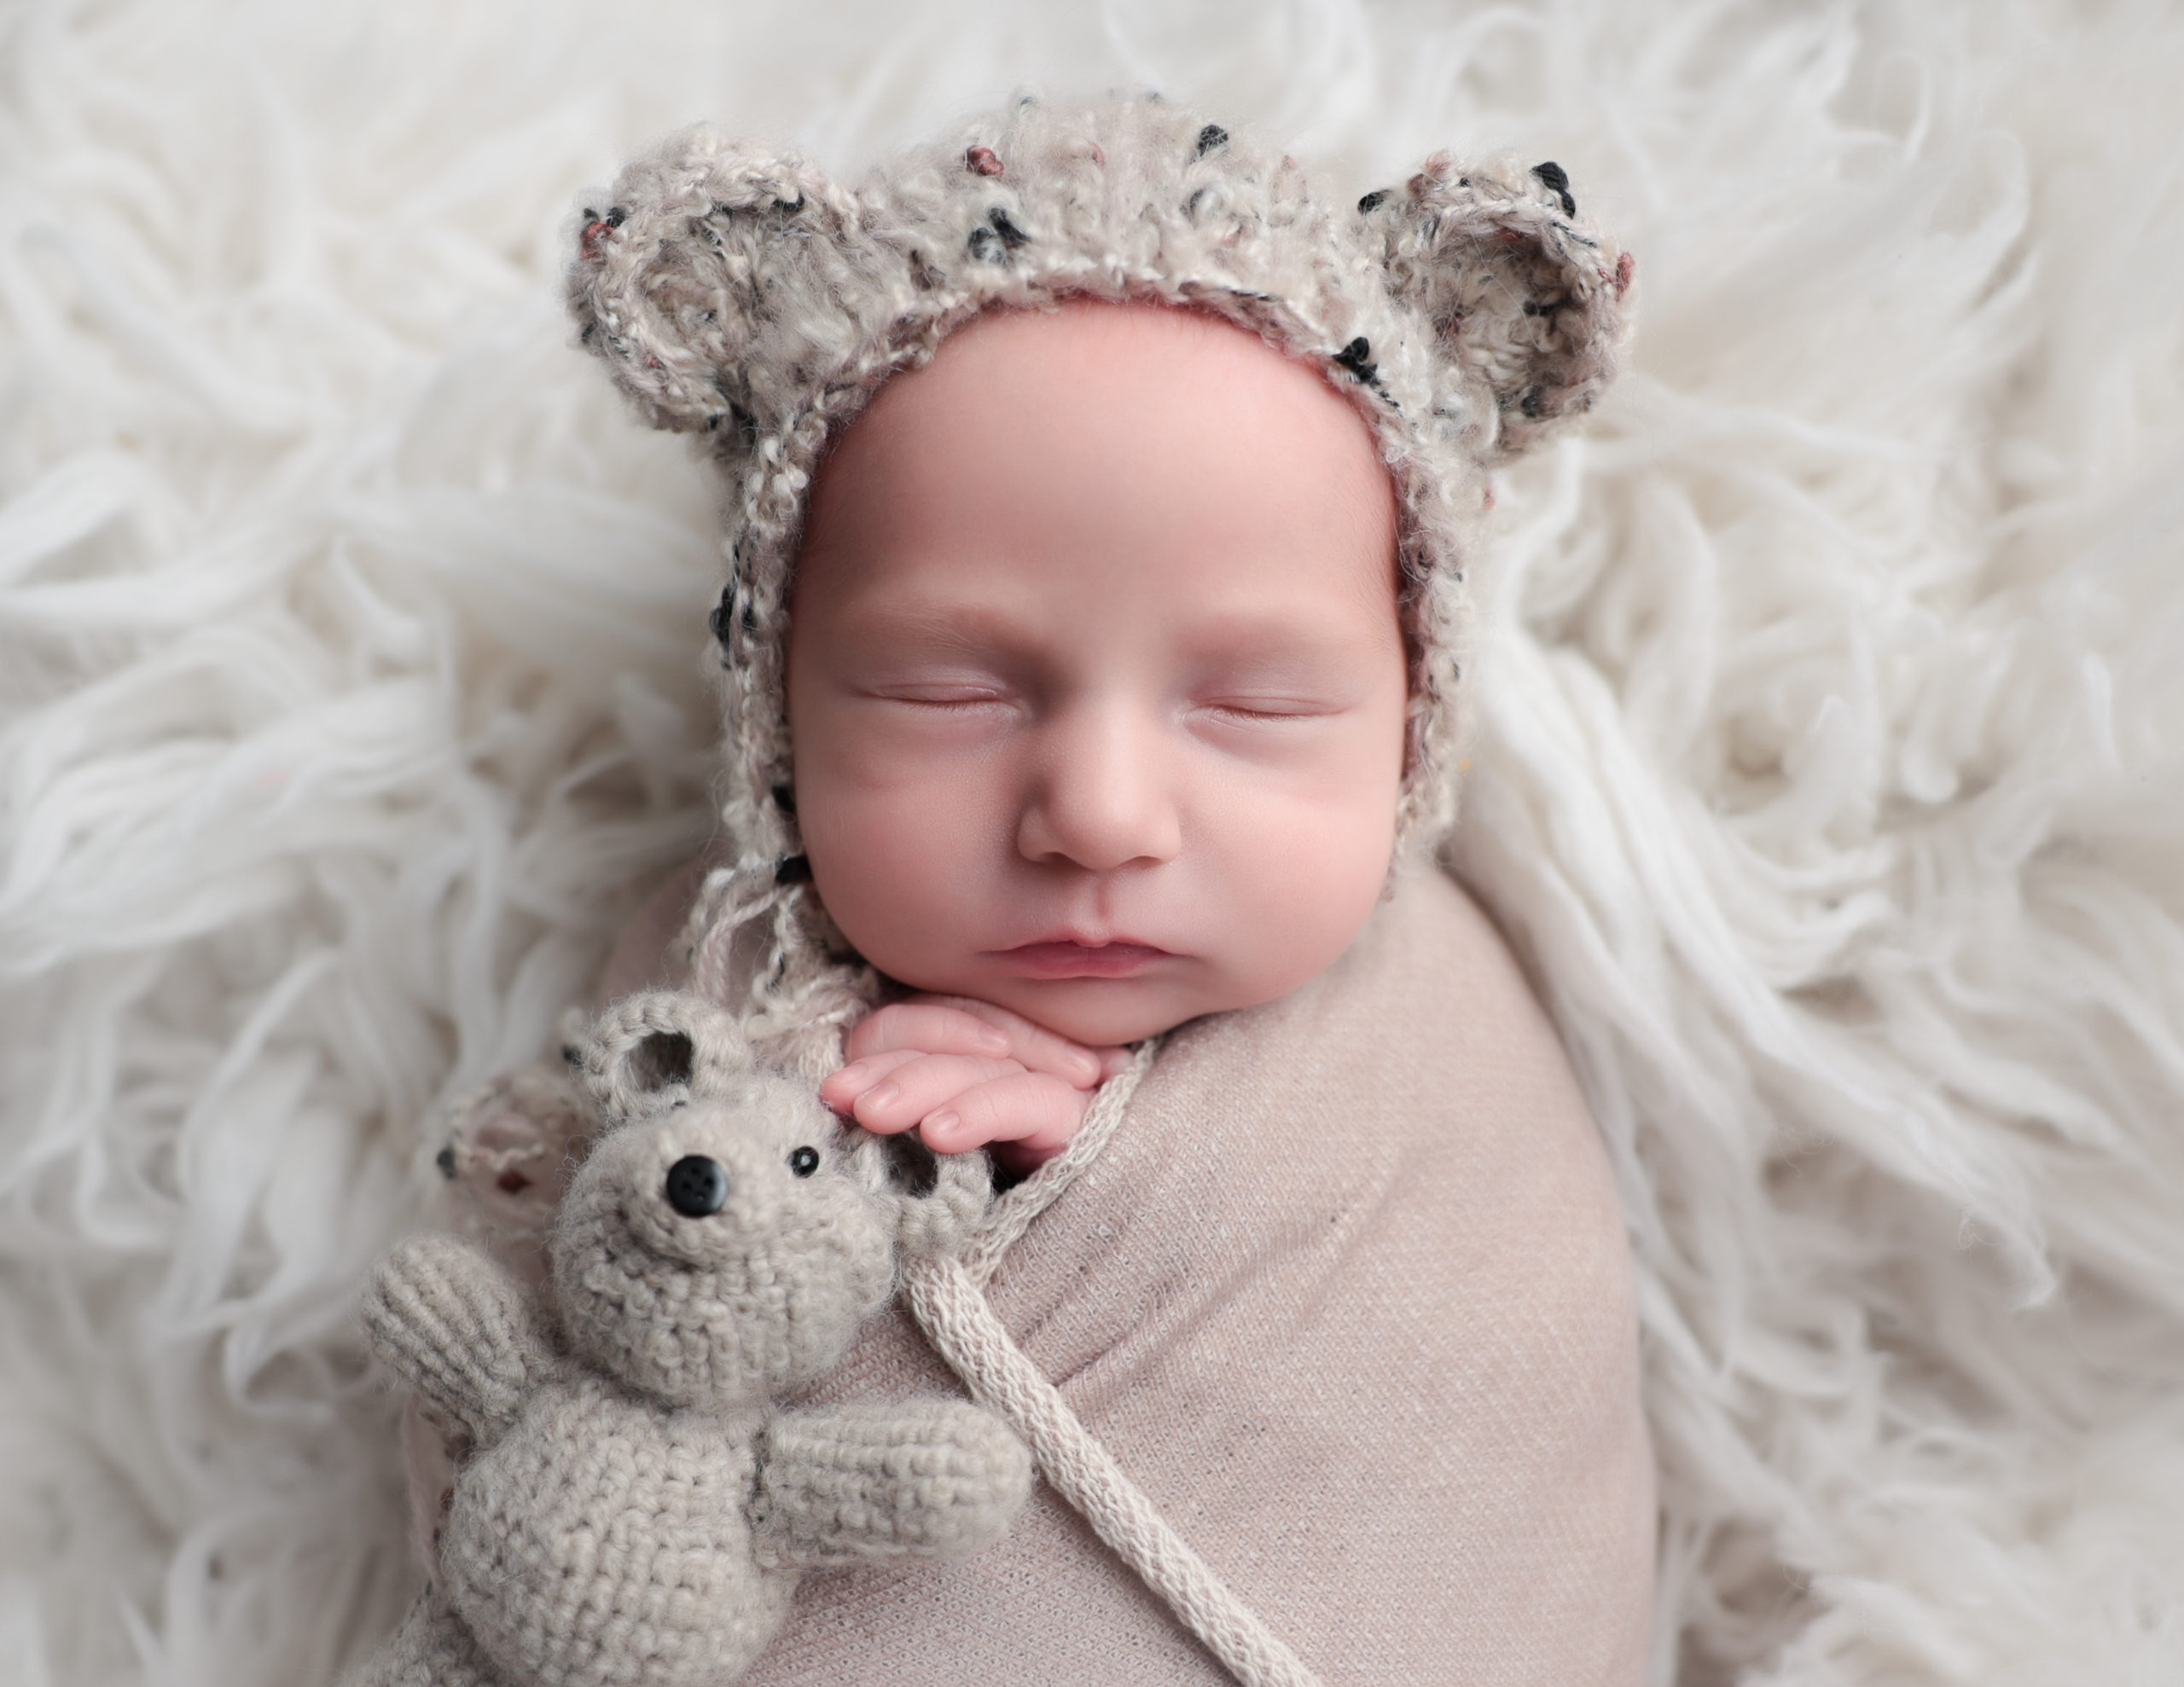 Teddy bear bonnet on a newborn boy